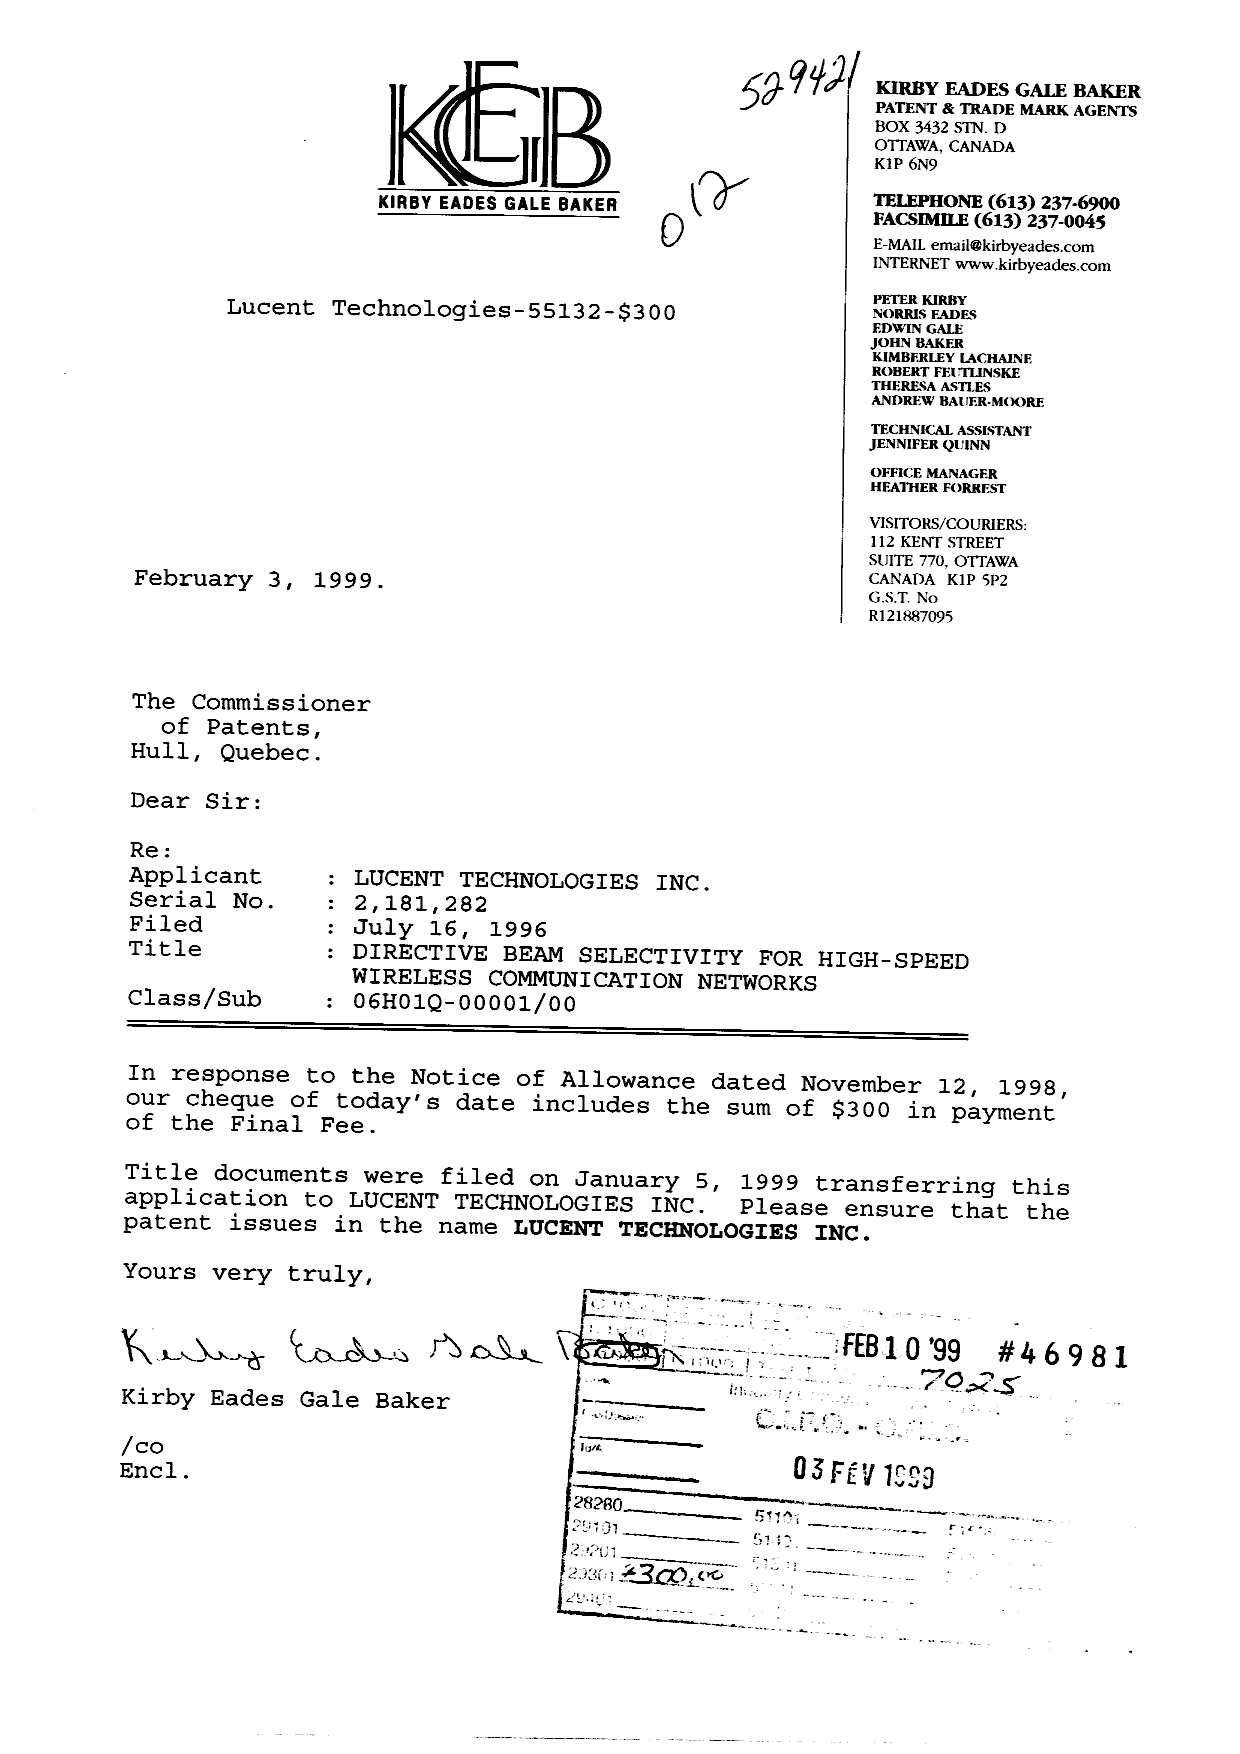 Document de brevet canadien 2181282. Correspondance 19981203. Image 1 de 1